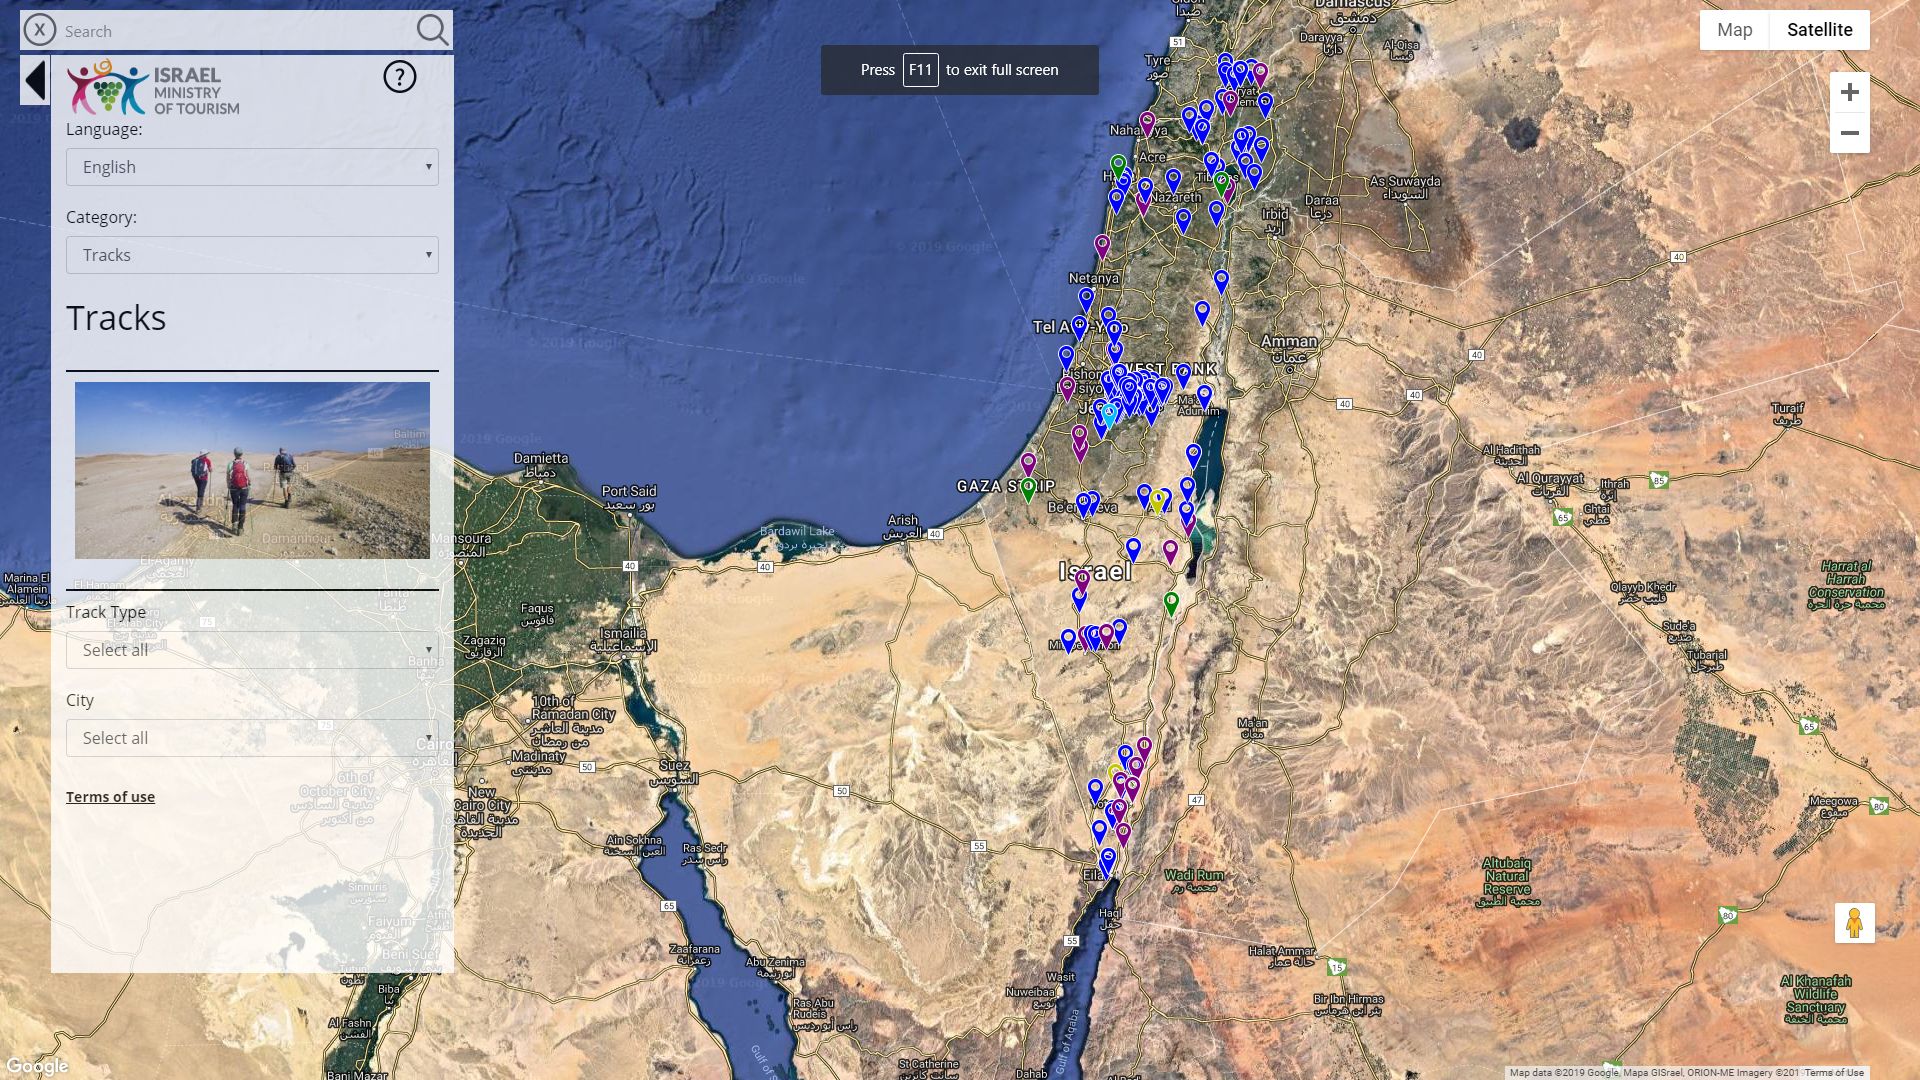 המפה האינטראקטיבית מנגישה מידע לתיירים ולמטיילים הישראלים בצורה ידידותית ונוחה